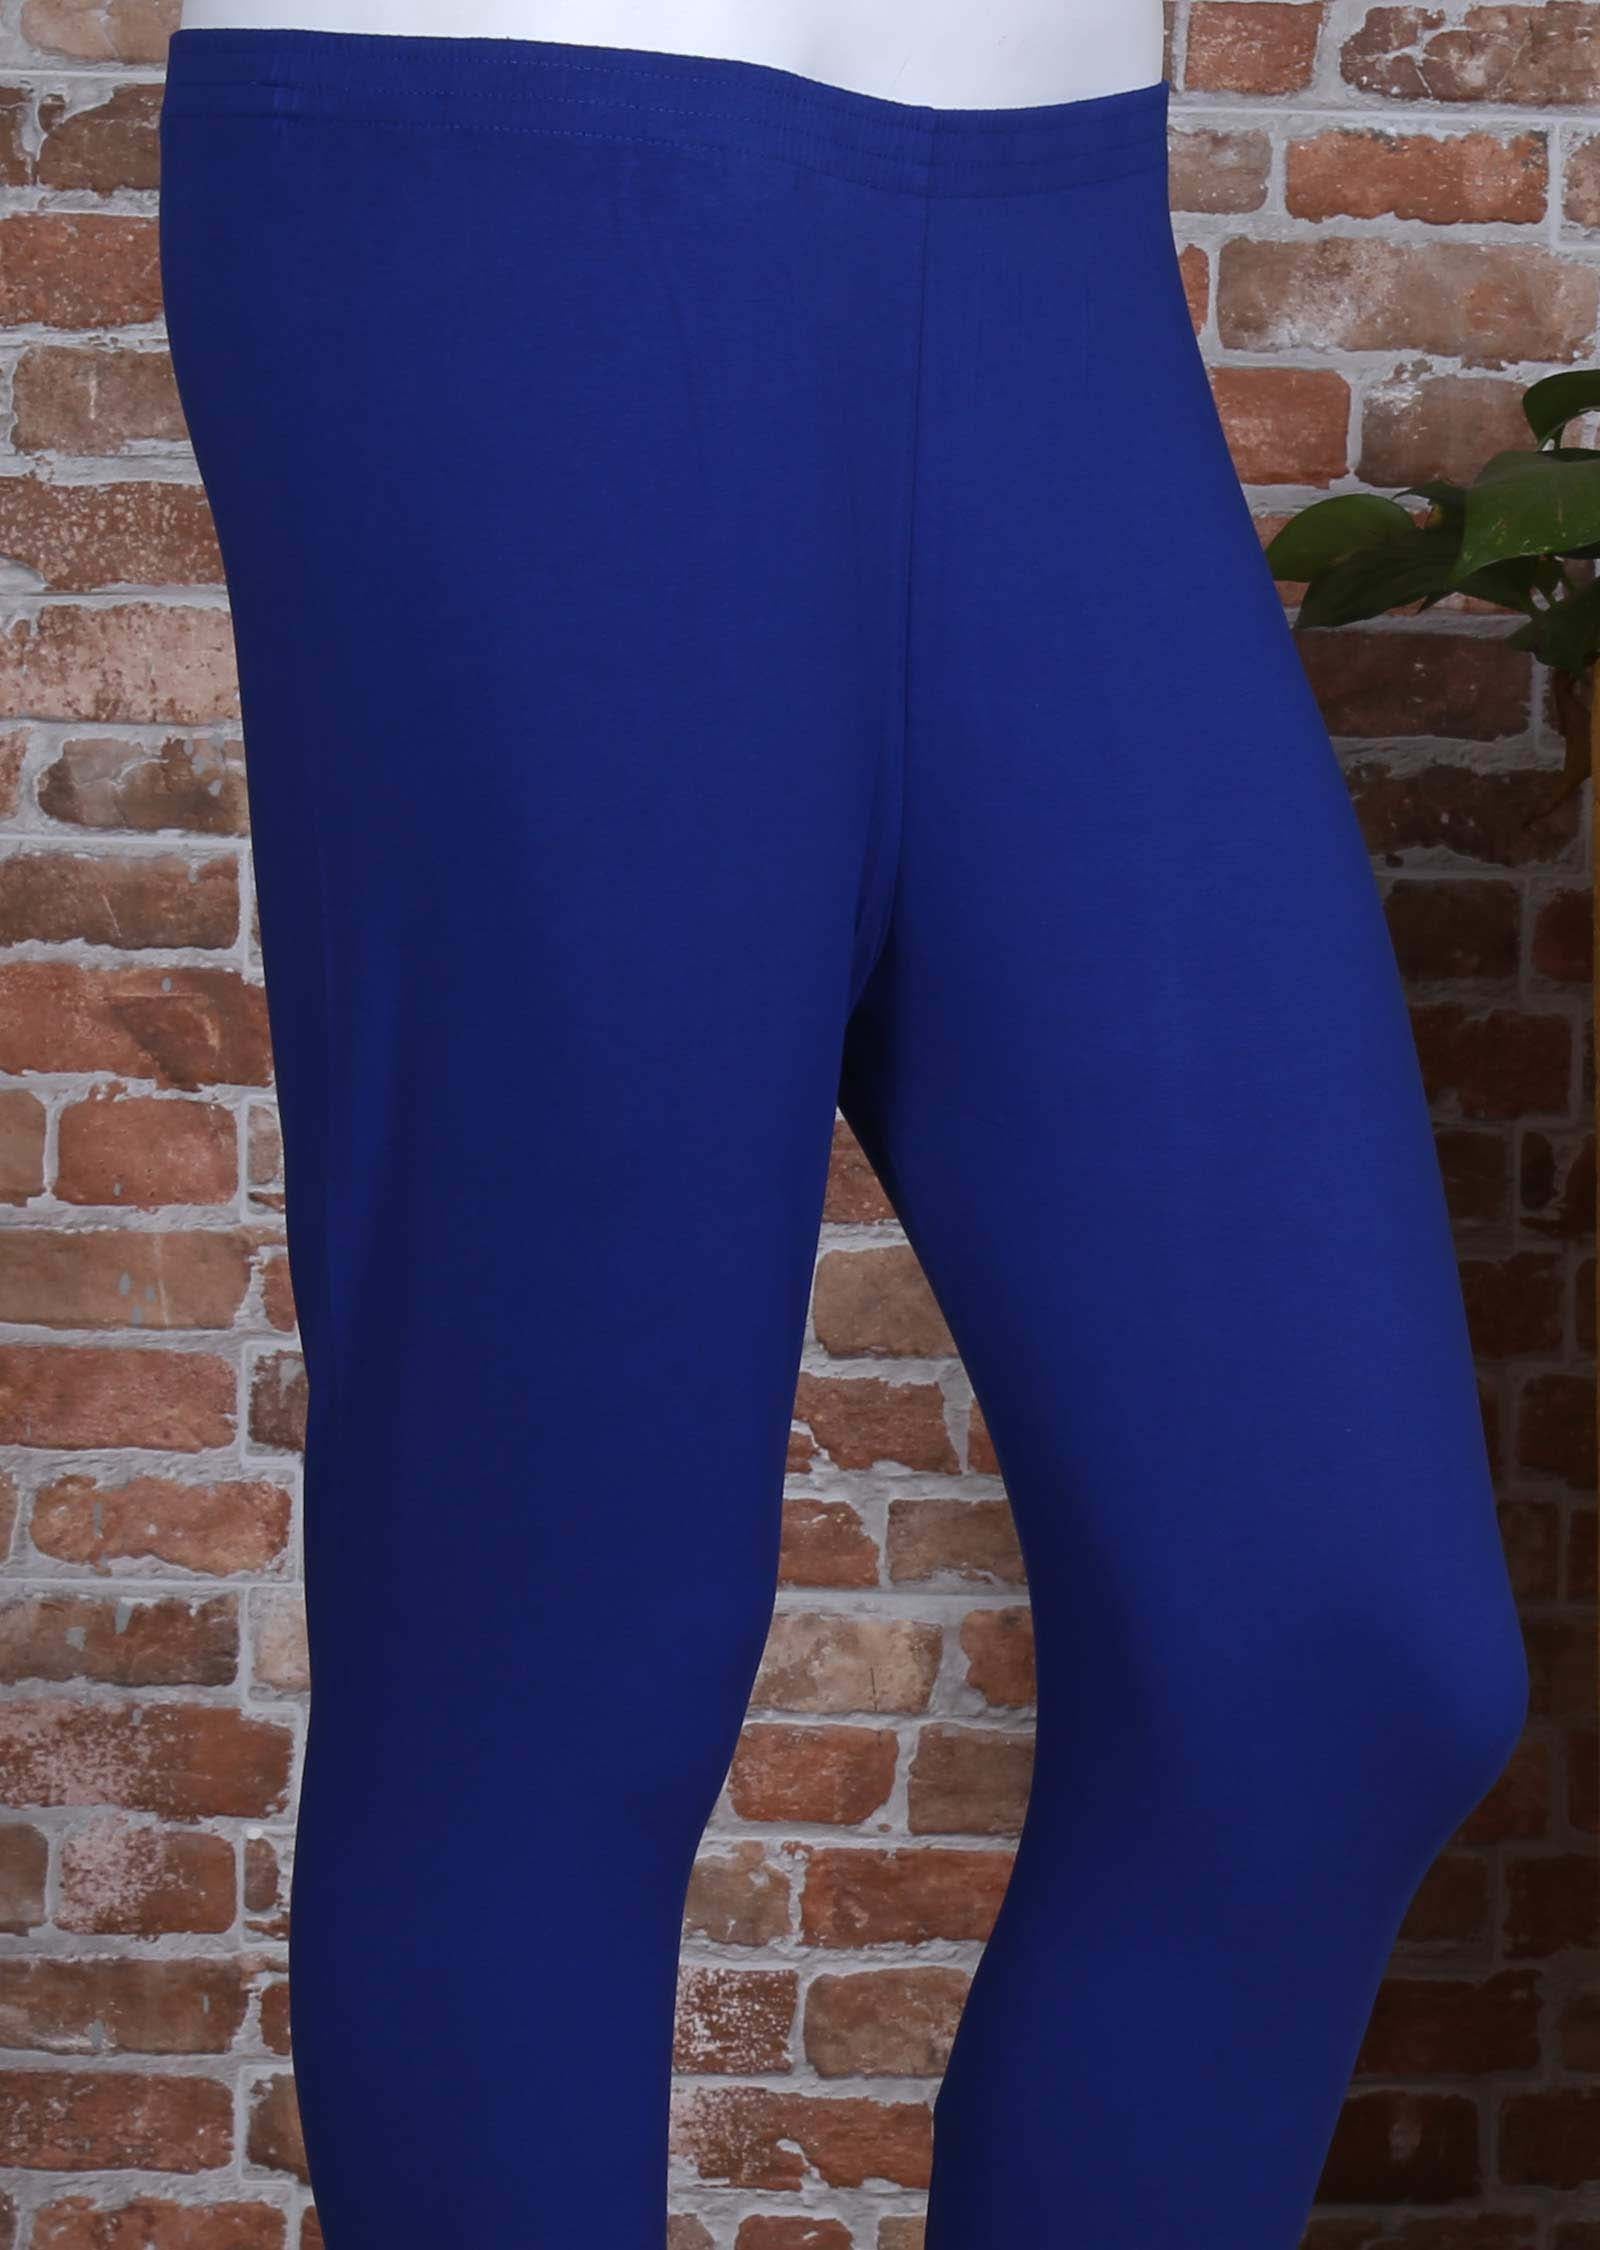 Blue Lycra leggings